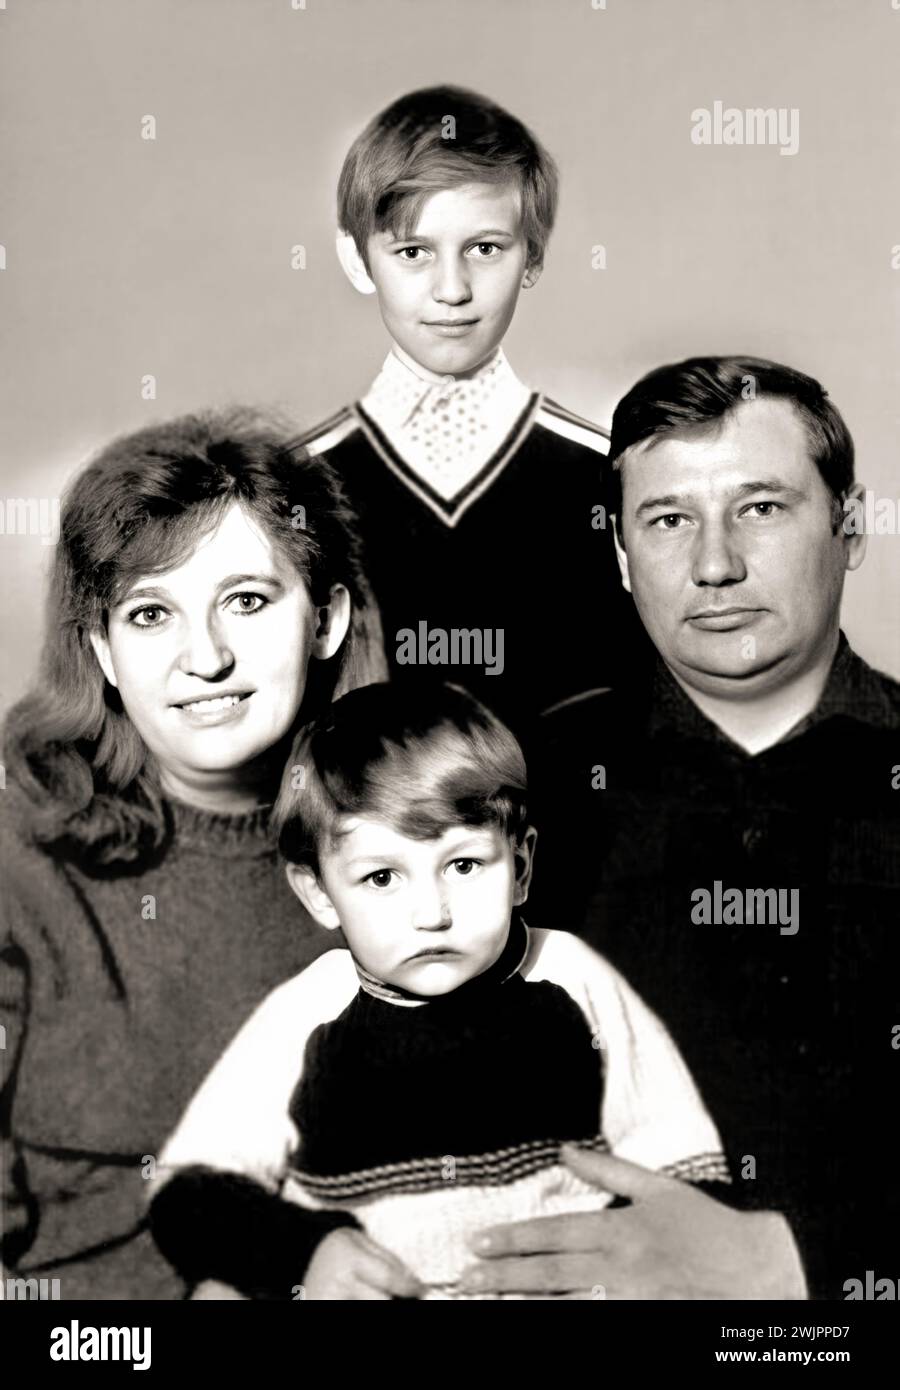 1987 c. , URSS : der russische Rechtsanwalt und Politiker ALEXEJ NAWALNY ( Aleksej Naval'nyj , 1976 - 2024 ), großer Oppositionsführer des russischen Diktators WLADIMIR PUTIN ( geboren 1952 ), als er ein junger Junge im Alter von 11 Jahren war und seine Familie von Vater ANATOLI NAWALNY komponierte . Mutter LYUDMILA NAVALNAYA und Bruder OLEG (* 1983). Er wurde von Amnesty International als Gewissensgefangener anerkannt und 2021 mit dem Sacharow-Preis für seine Arbeit im Bereich Menschenrechte ausgezeichnet. Unbekannter Fotograf. - OPPOSITORE POLITICO - RUSSLAND - POLITICO - POLITICA - POLITIC - personalità personalità da giovane giovani Stockfoto